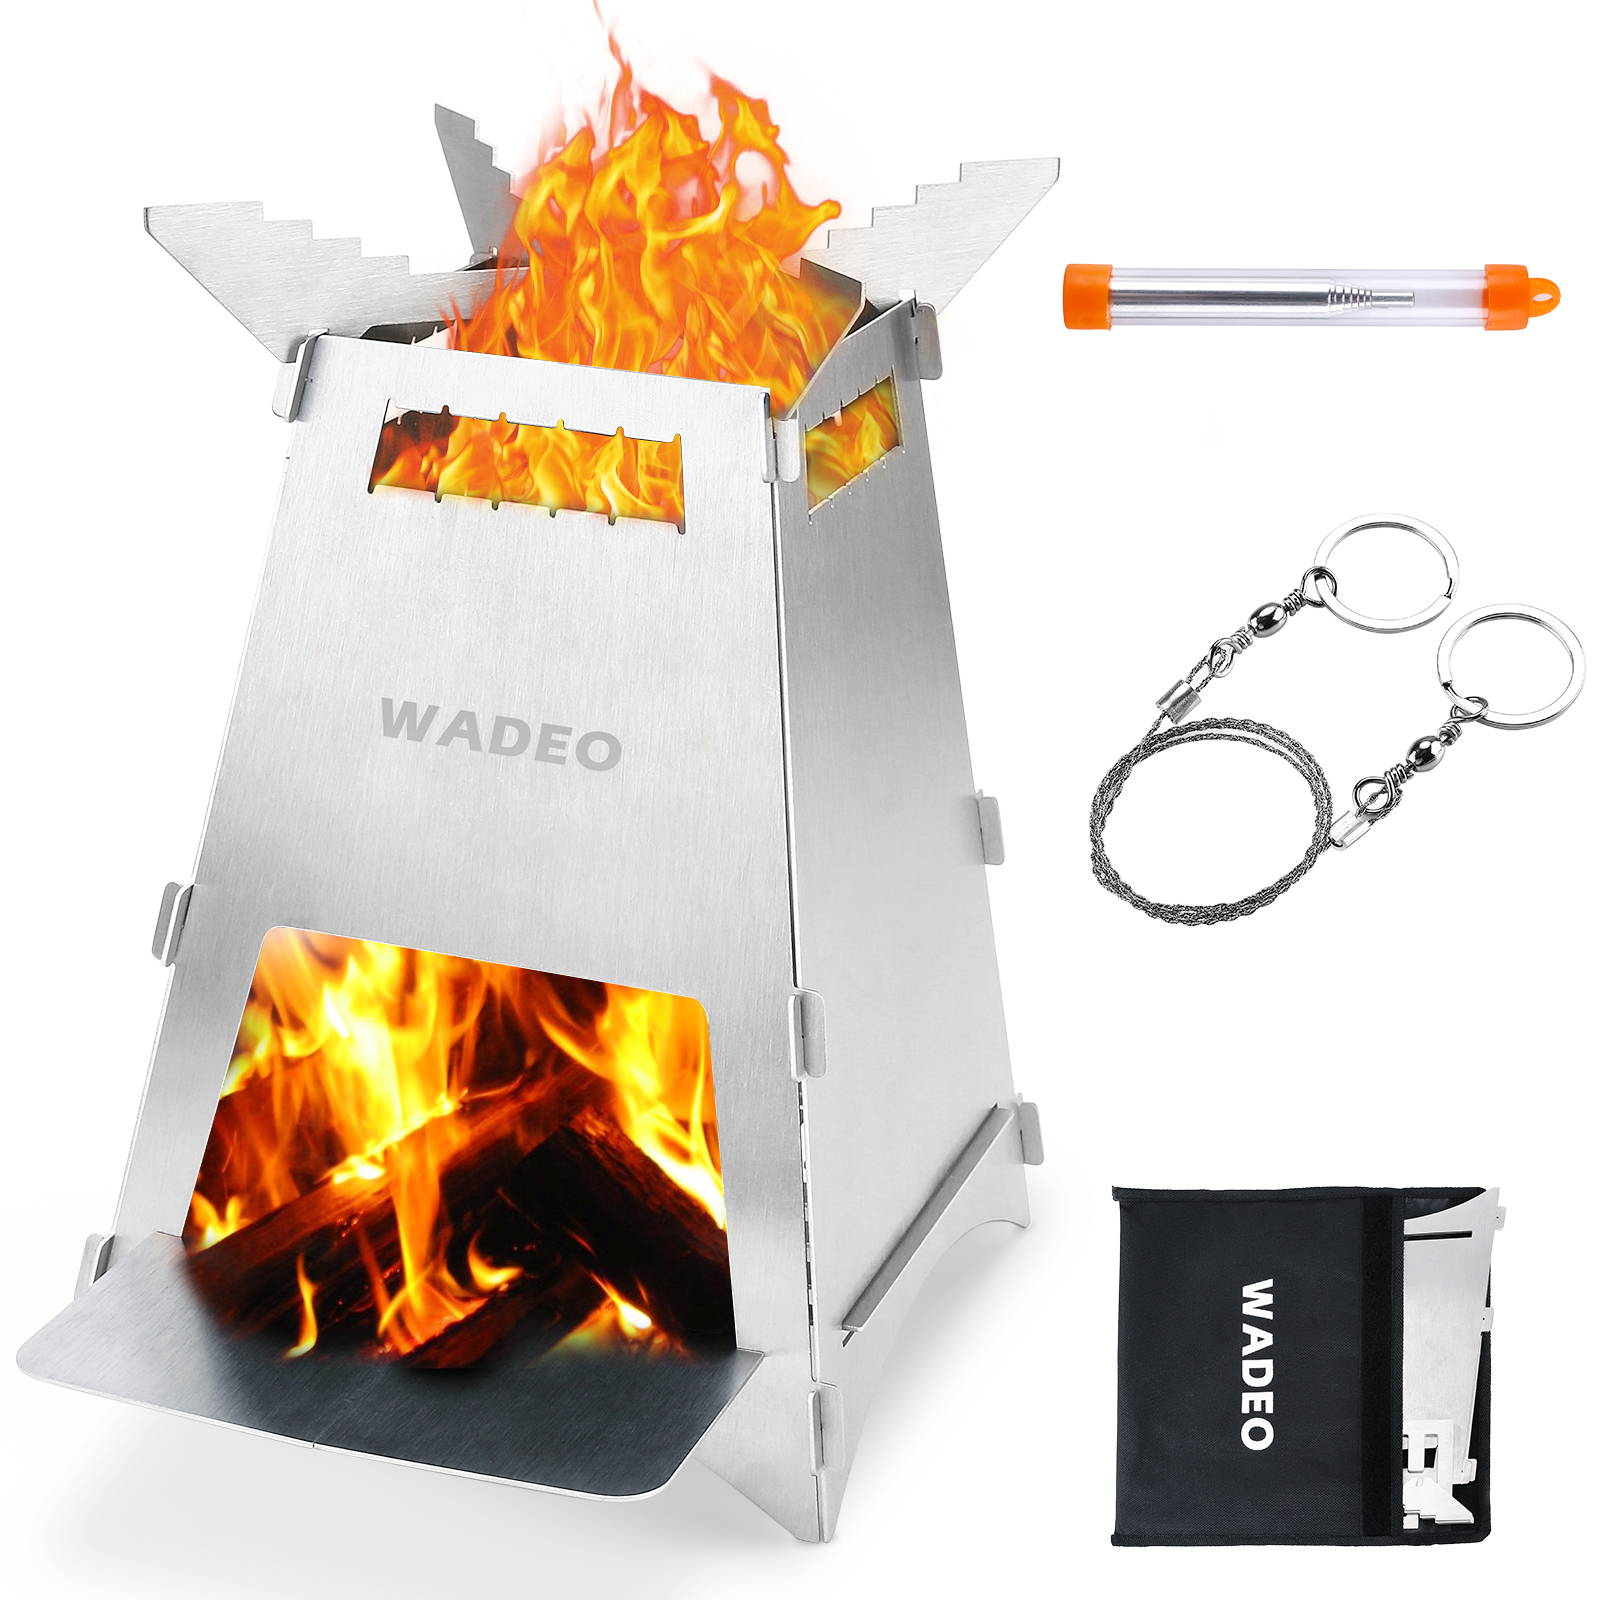 WADEO Portable Wood Burning Camping Stove